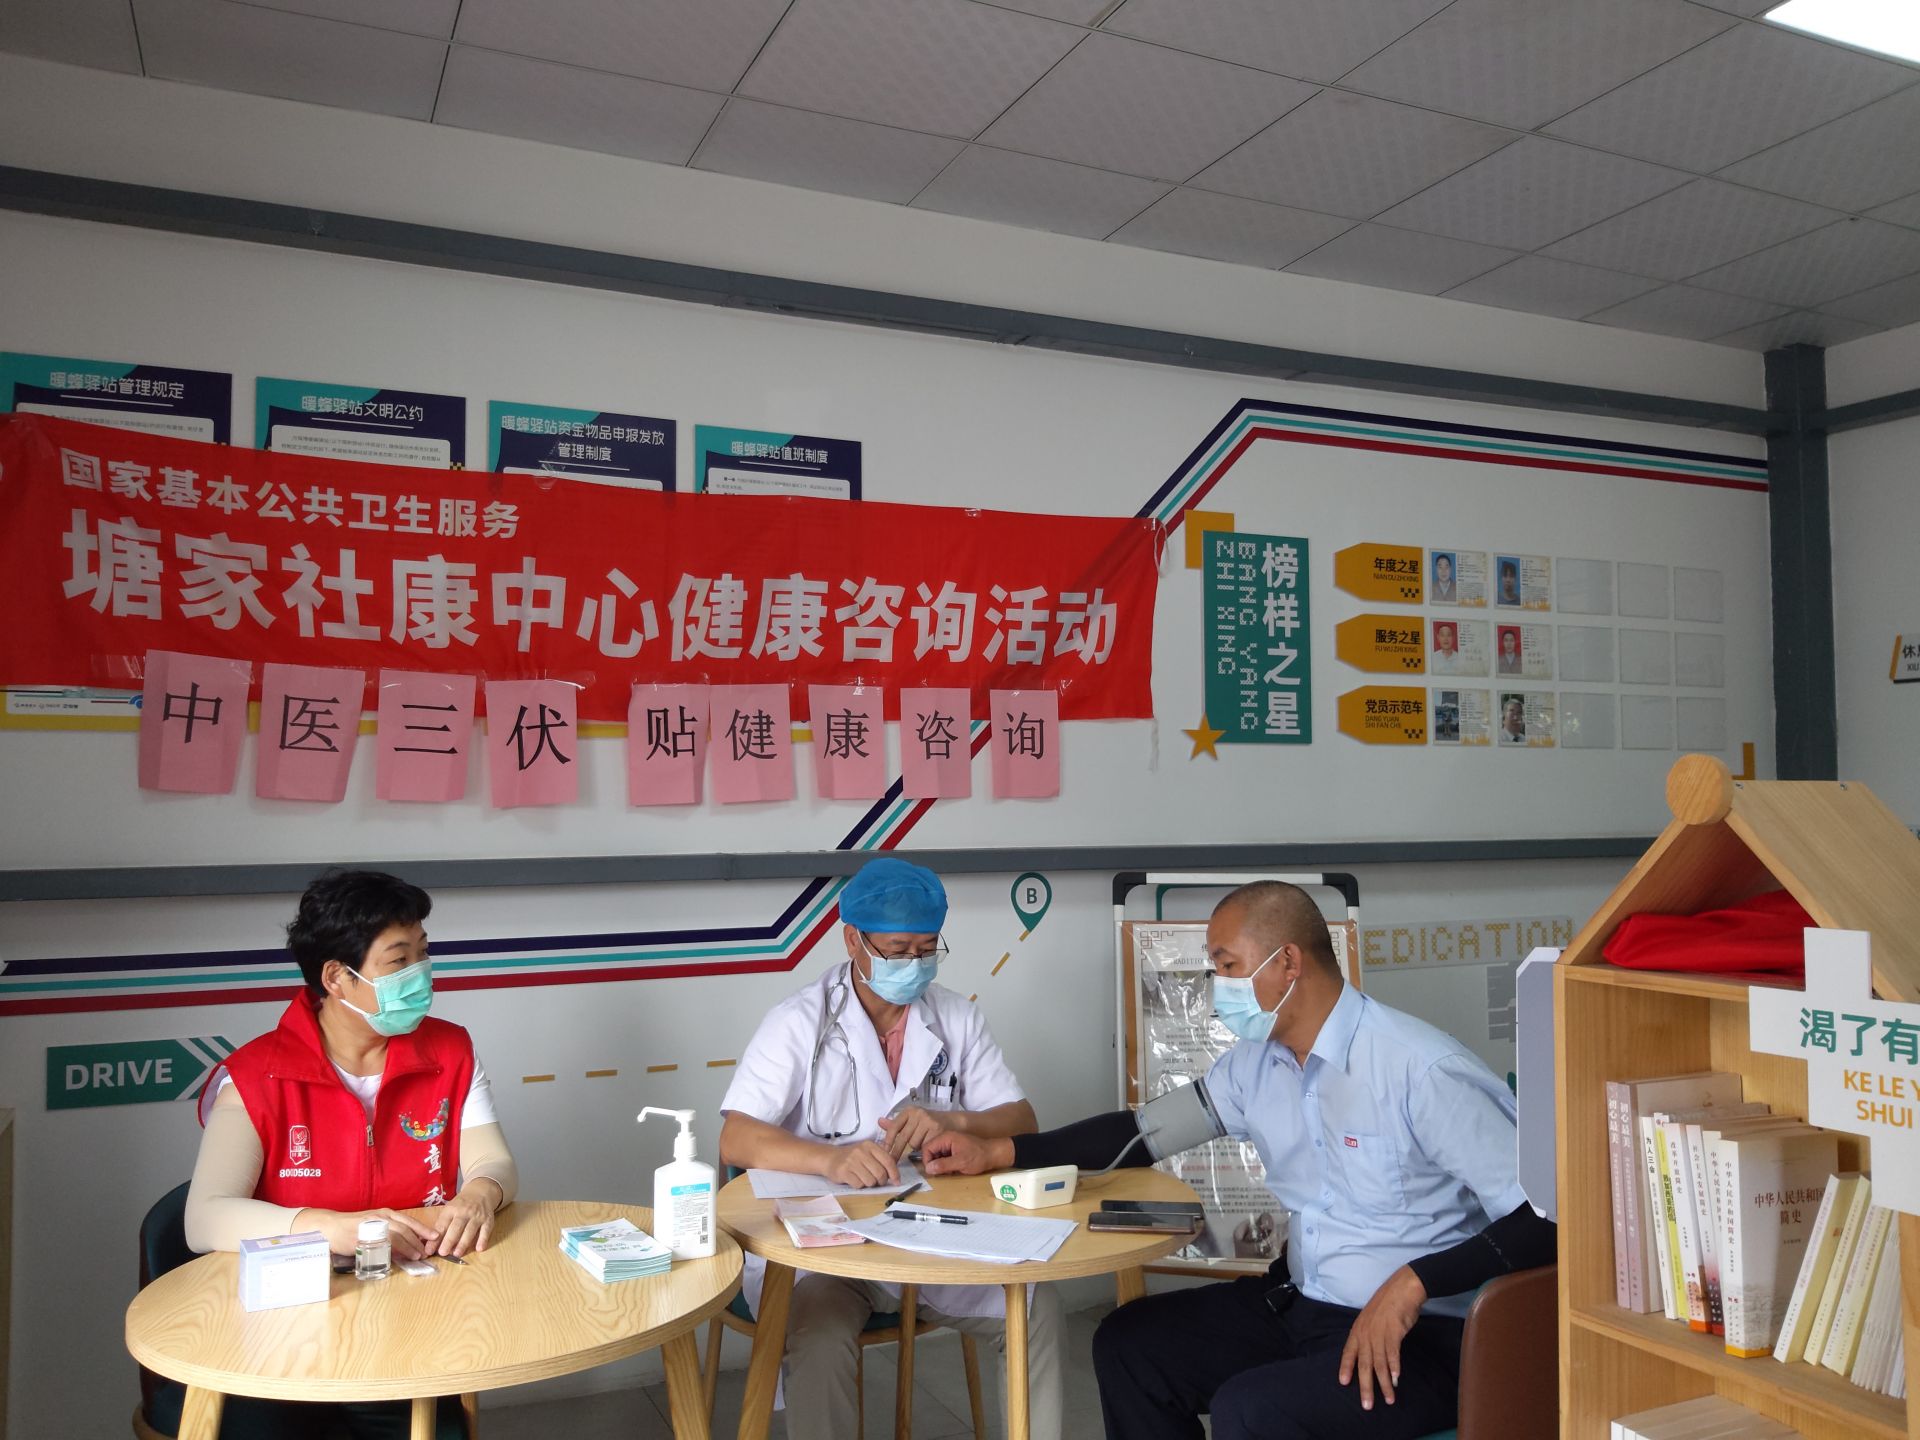 塘家社区“光明虹”党员健康服务队为新业态群体开展义诊服务  